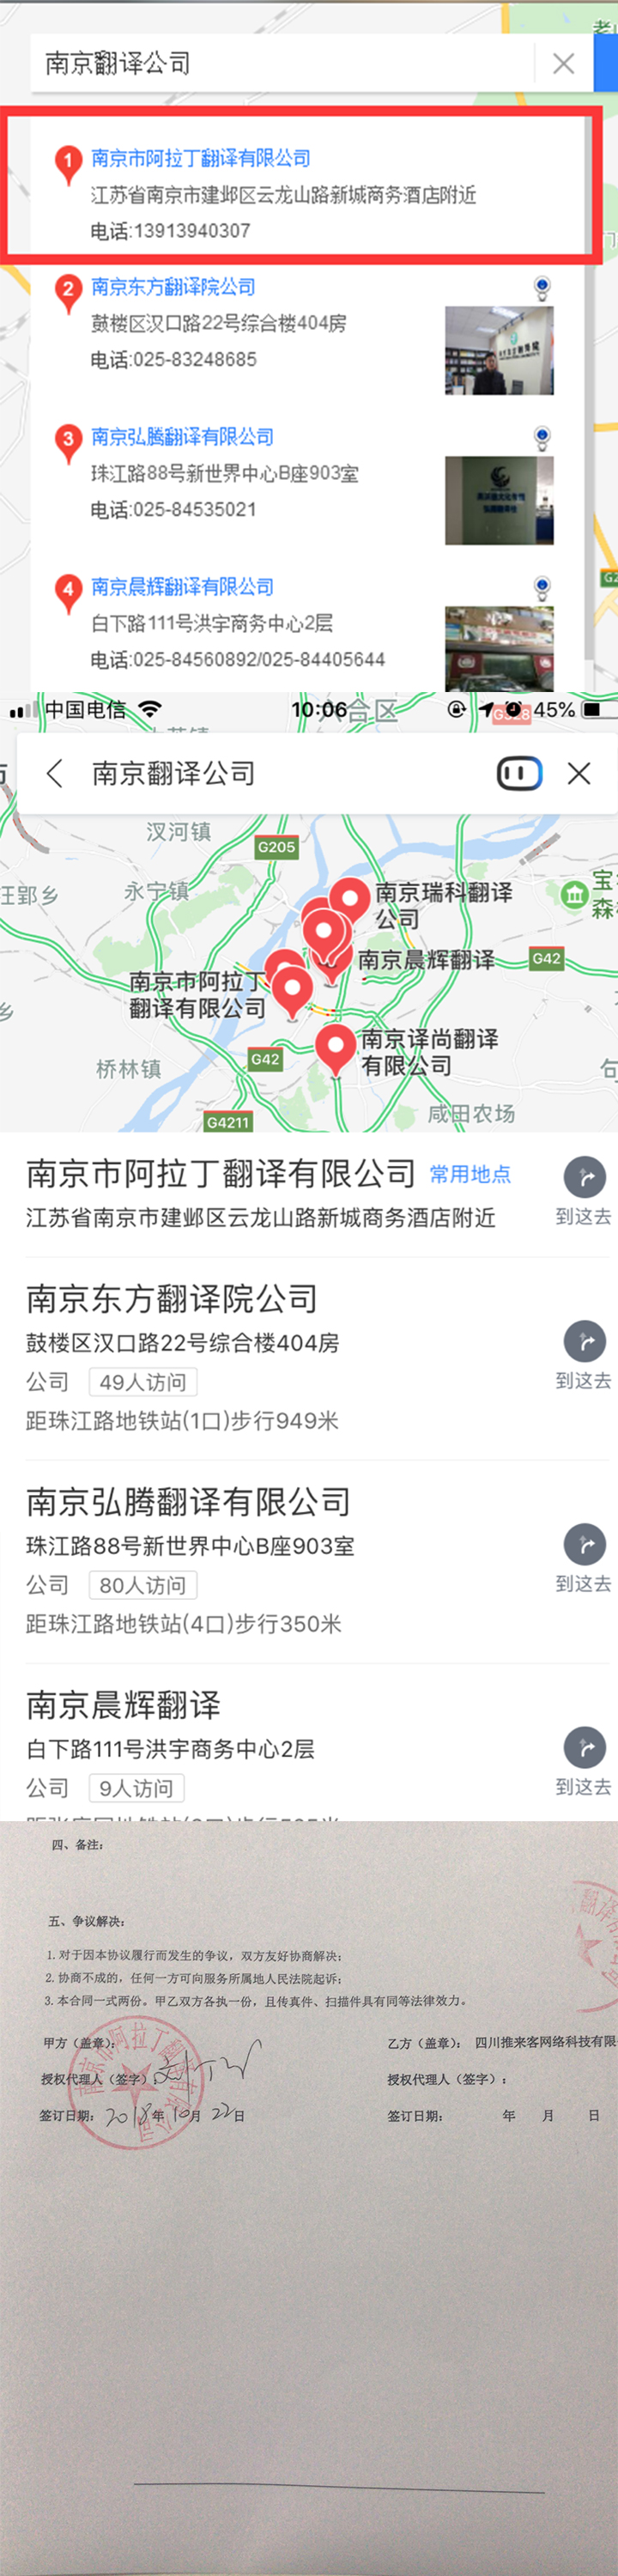 南京翻译公司百度地图排名案例